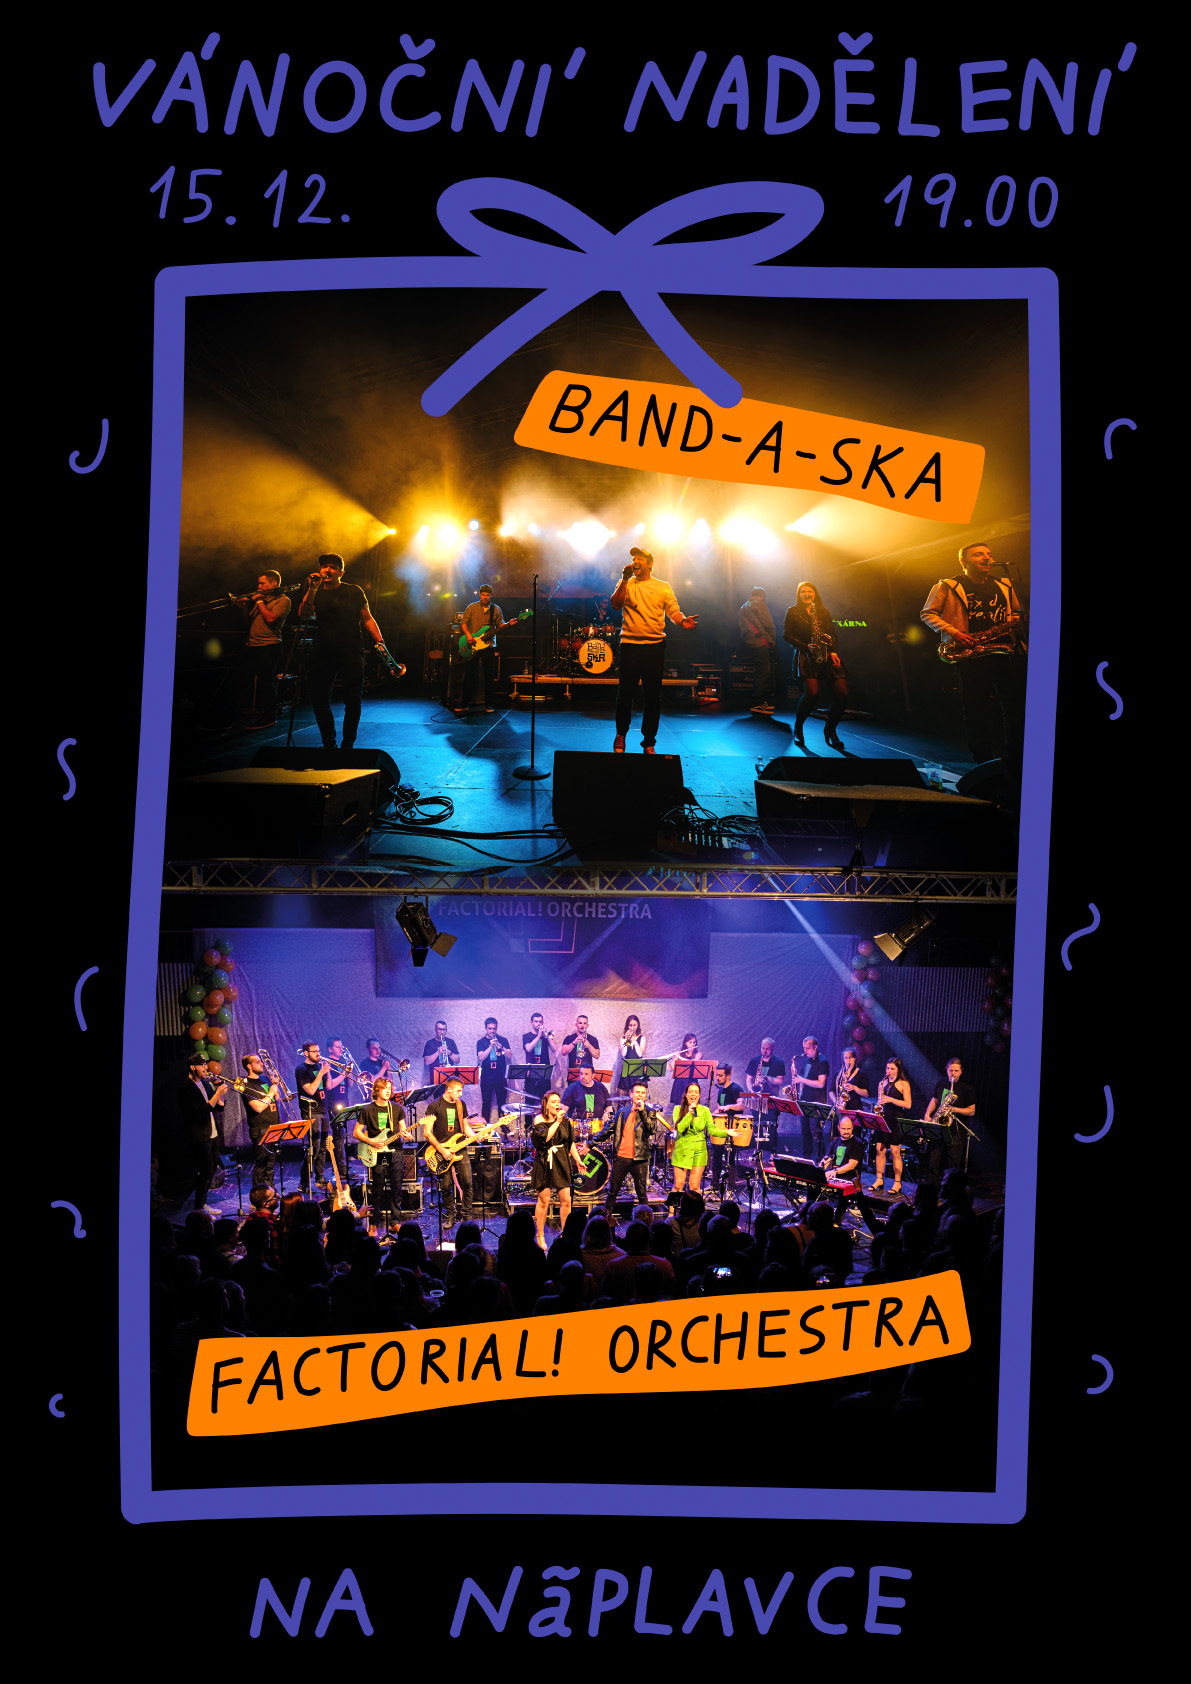 Vánoční nadělení na Naplavce: Factor!al Orchestra; host BAND-A-SKA